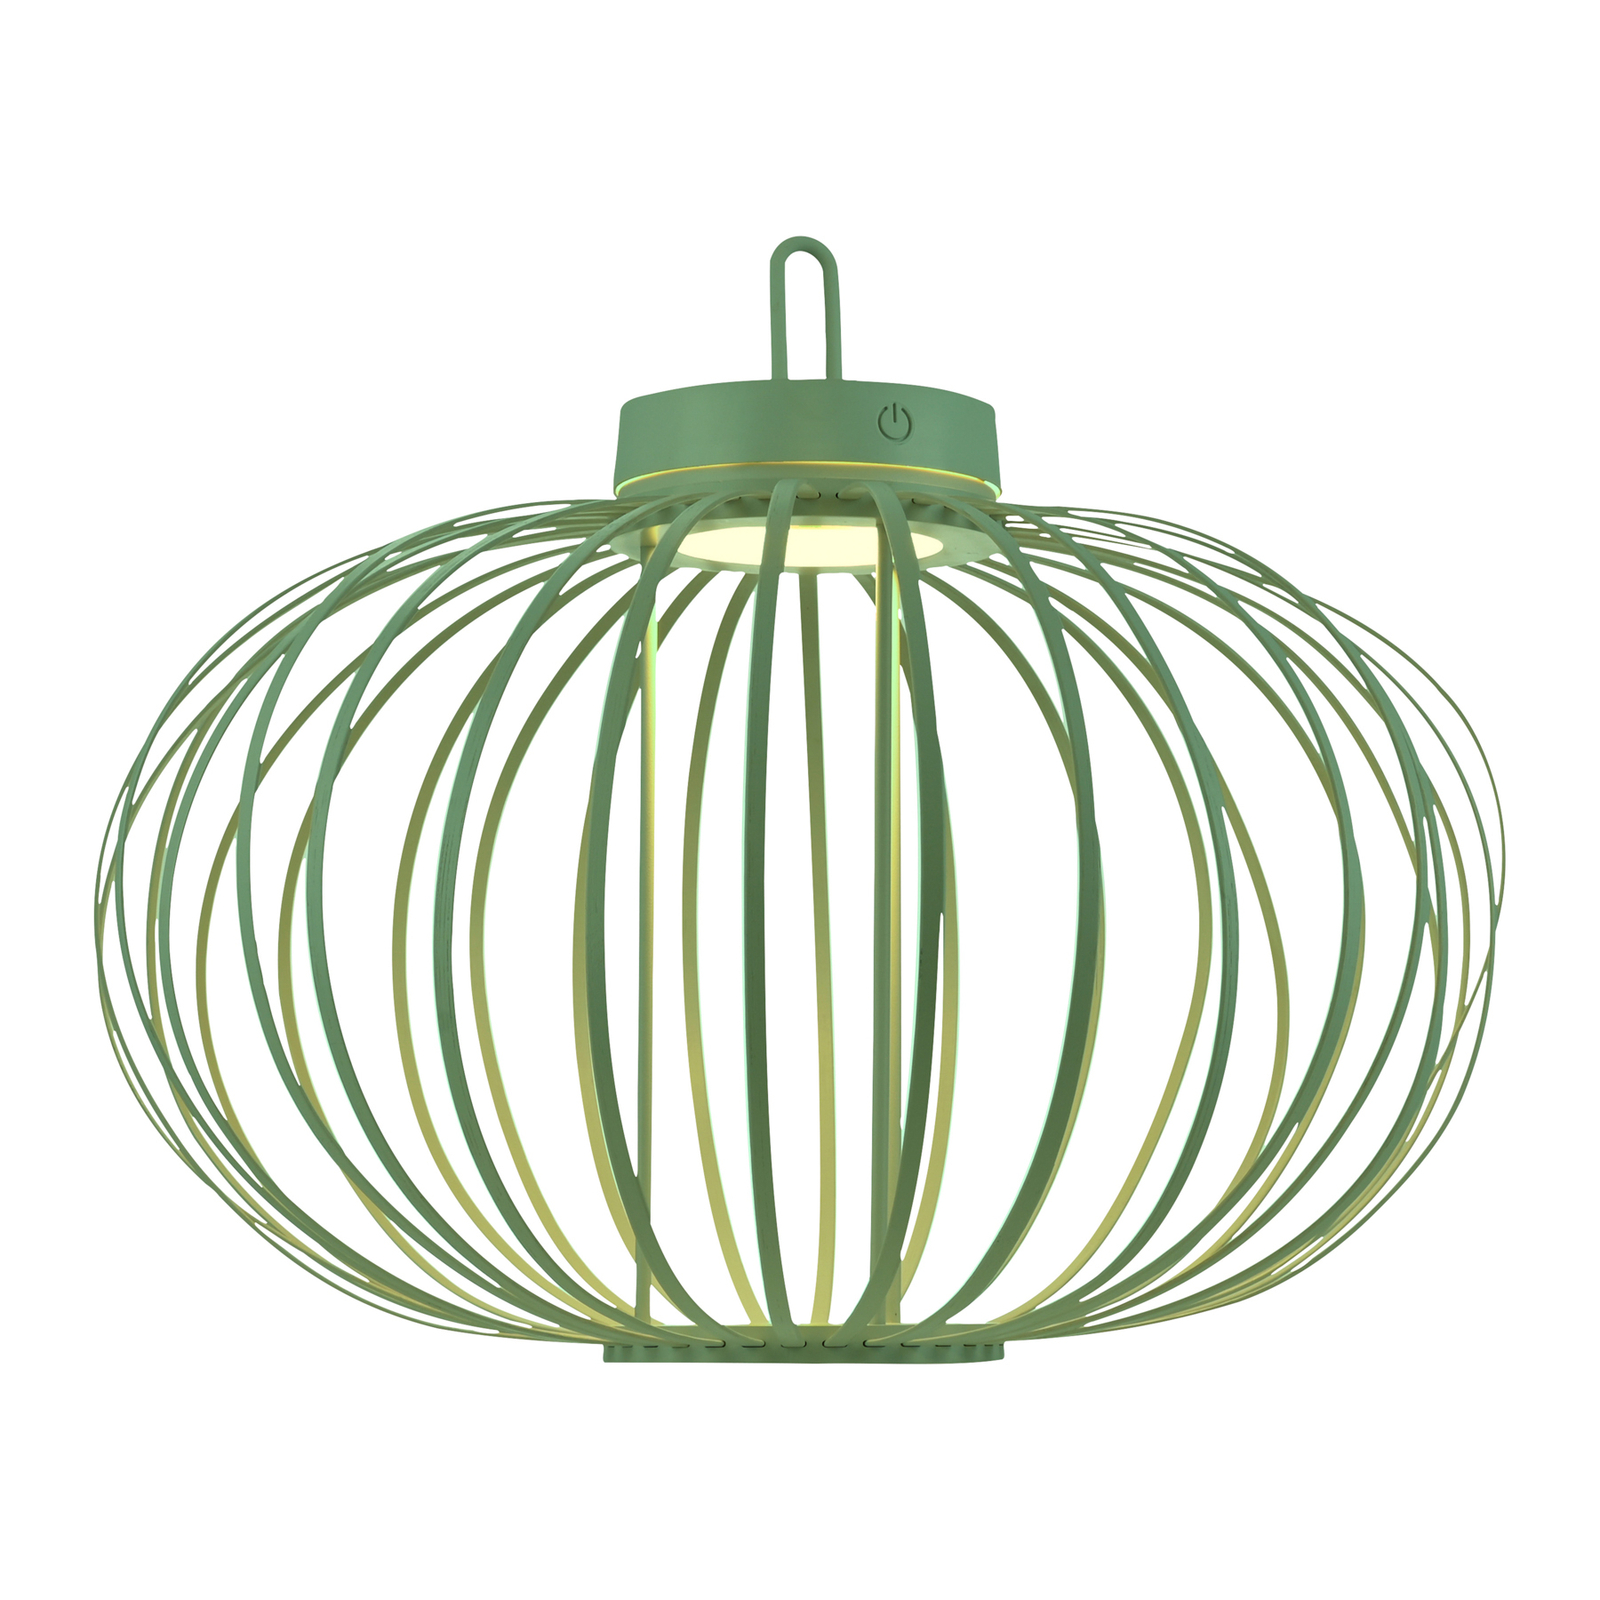 JUST LIGHT. Akuba LED tafellamp, groen, 37 cm, bamboe